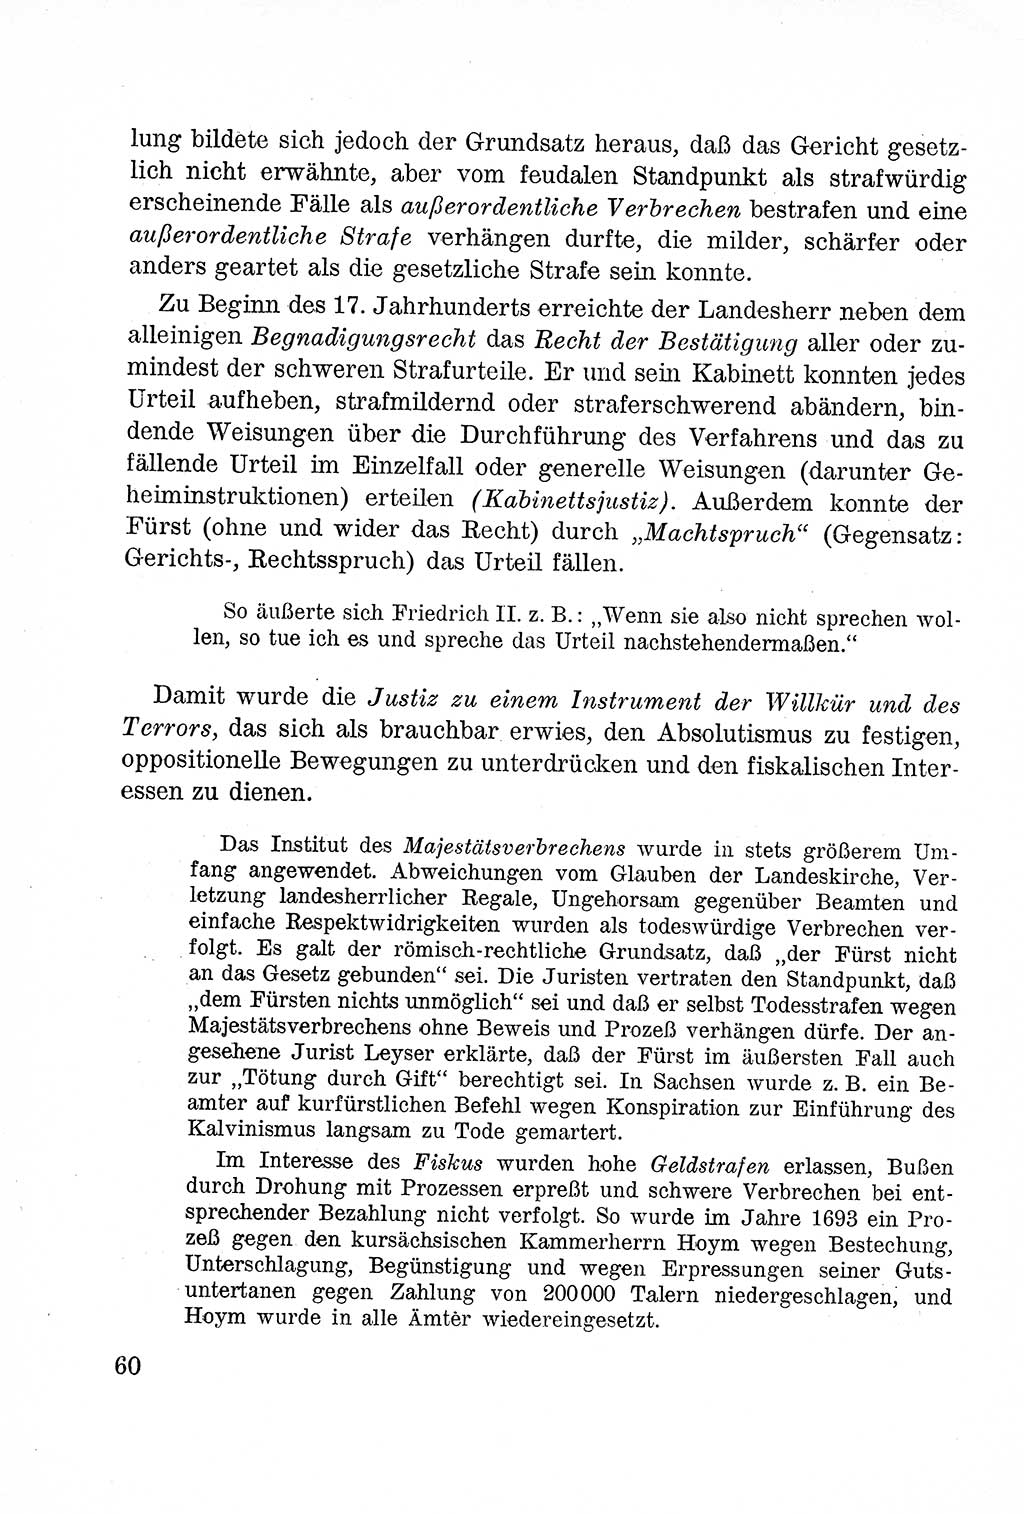 Lehrbuch des Strafrechts der Deutschen Demokratischen Republik (DDR), Allgemeiner Teil 1957, Seite 60 (Lb. Strafr. DDR AT 1957, S. 60)